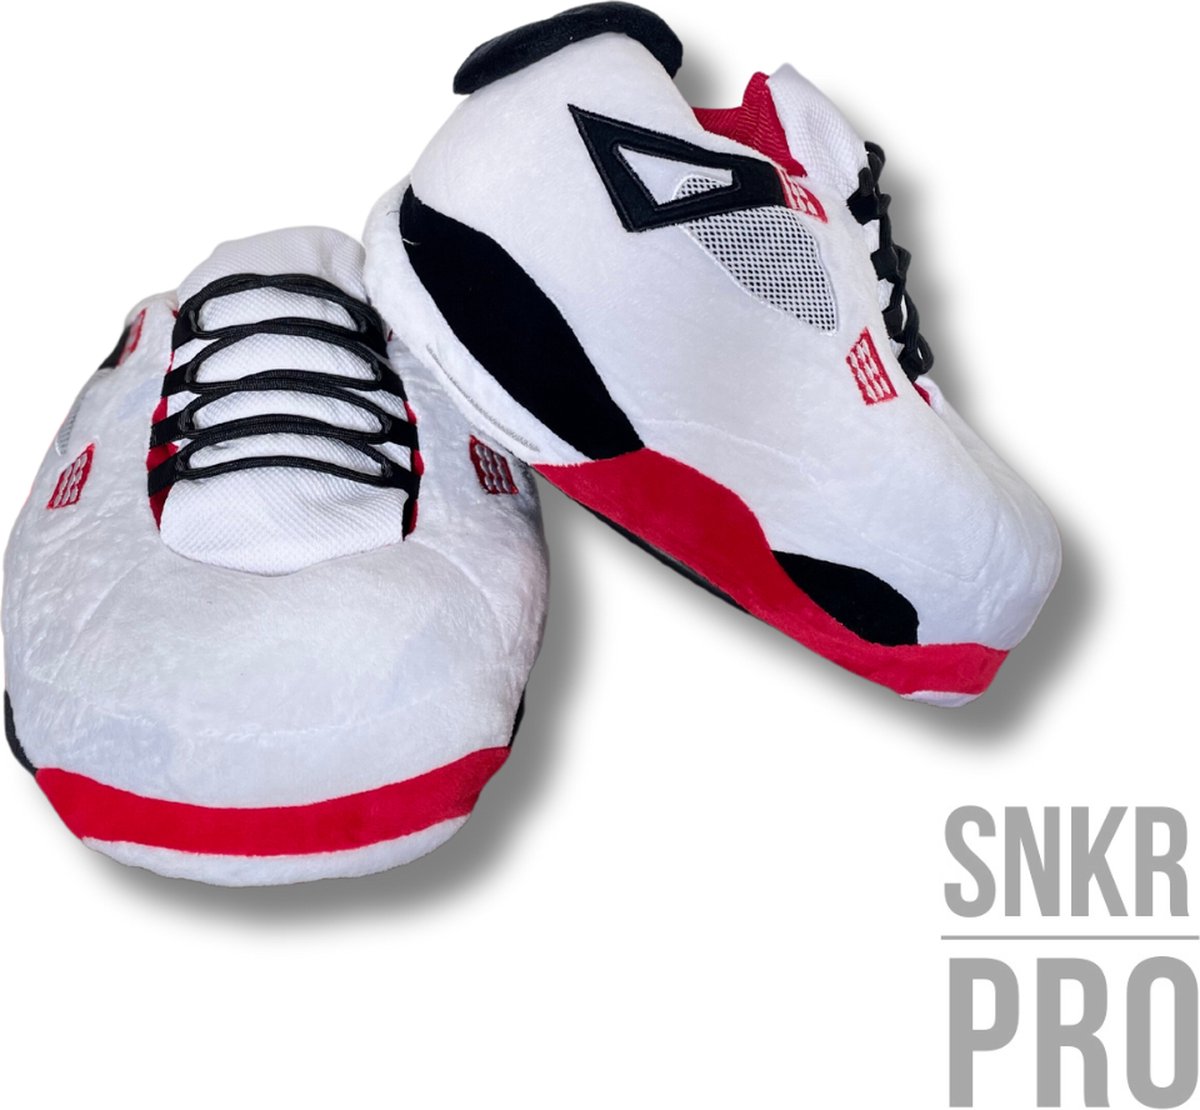 Sneaker Sloffen/ Sneaker Pantoffels/ Rood-Wit/ Maat 36-43/ SNKR-PRO/ One Size/ Jordan Sloffen/ Jordan Pantoffels